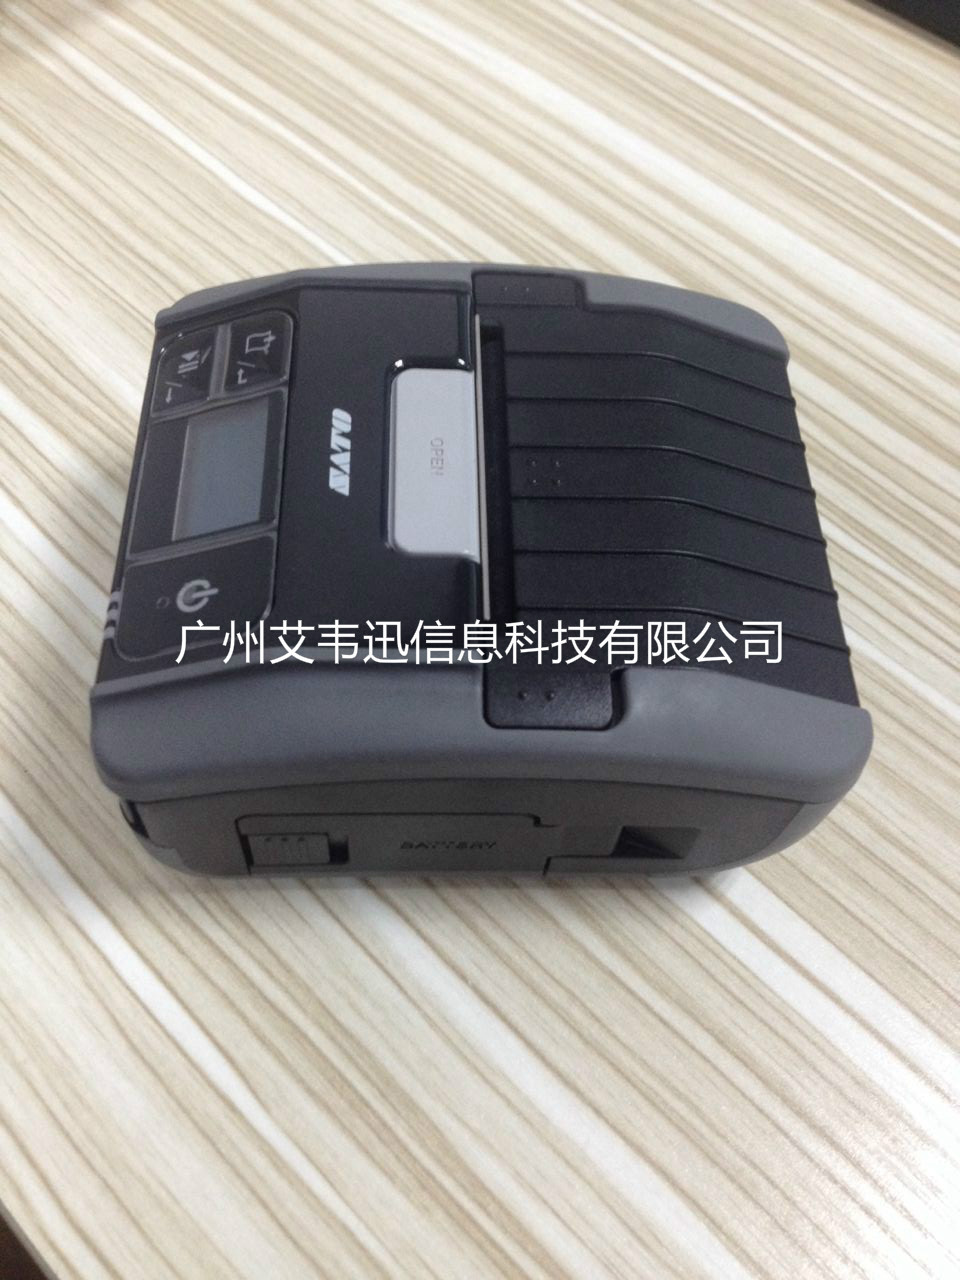 SATO佐藤便携式蓝牙打印机VP208助力上海某工具有限公司